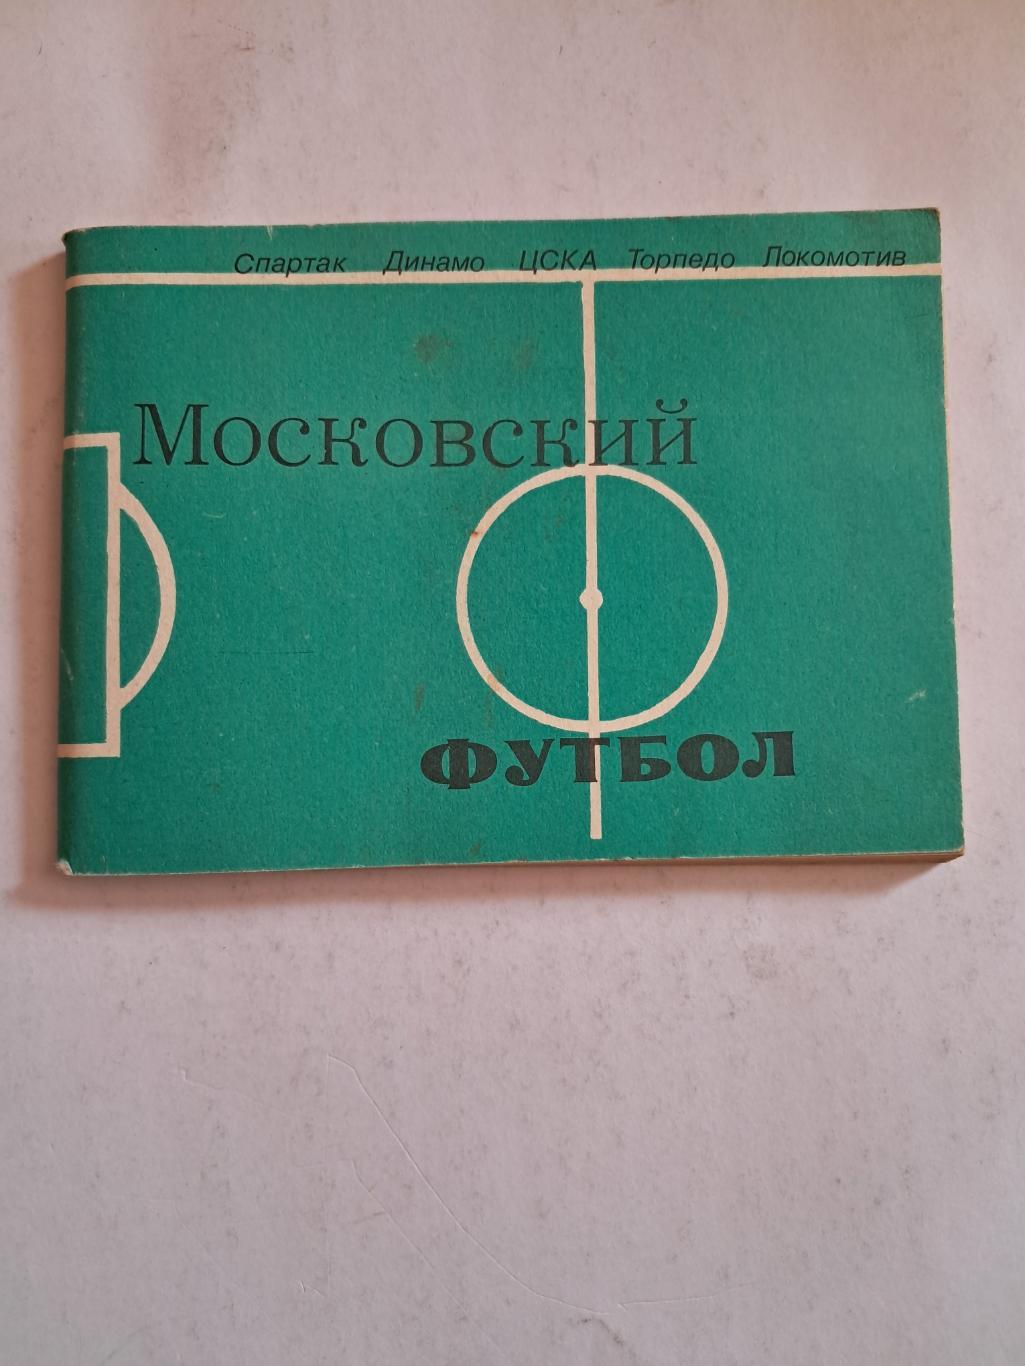 Календарь-справочник по футболу 1981. Москва.